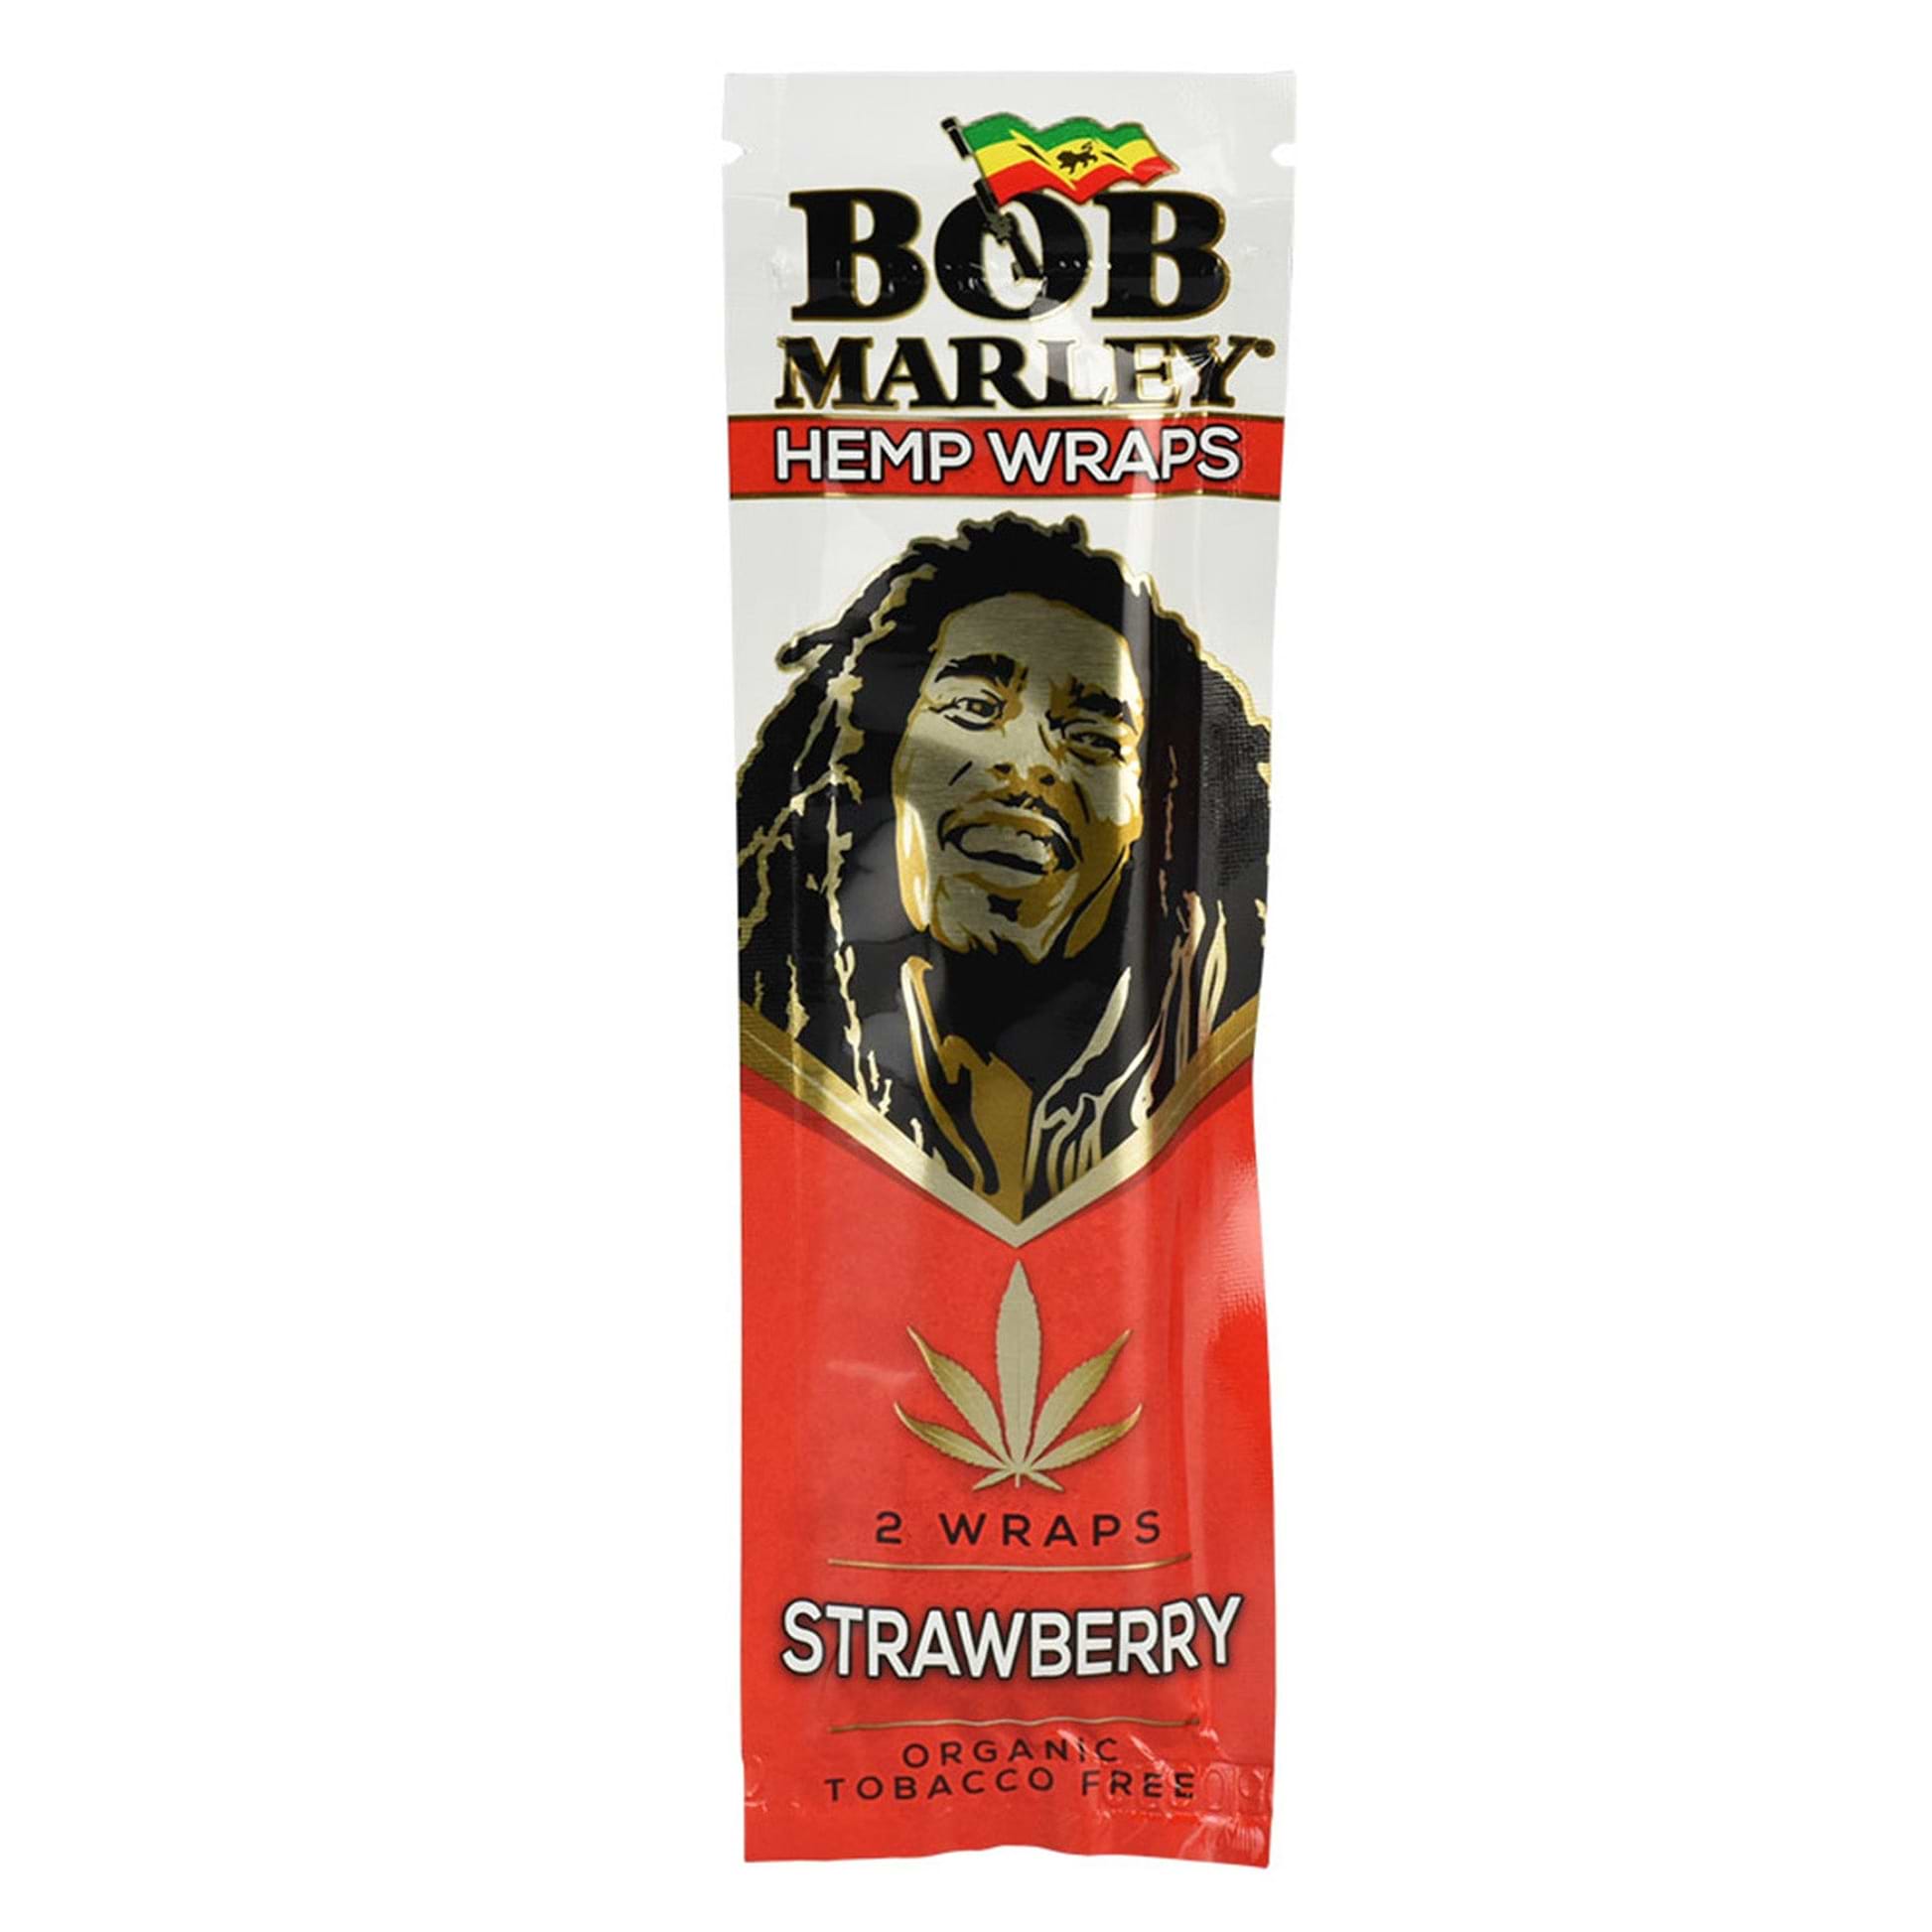 Bob Marley Hemp Wraps Strawberry